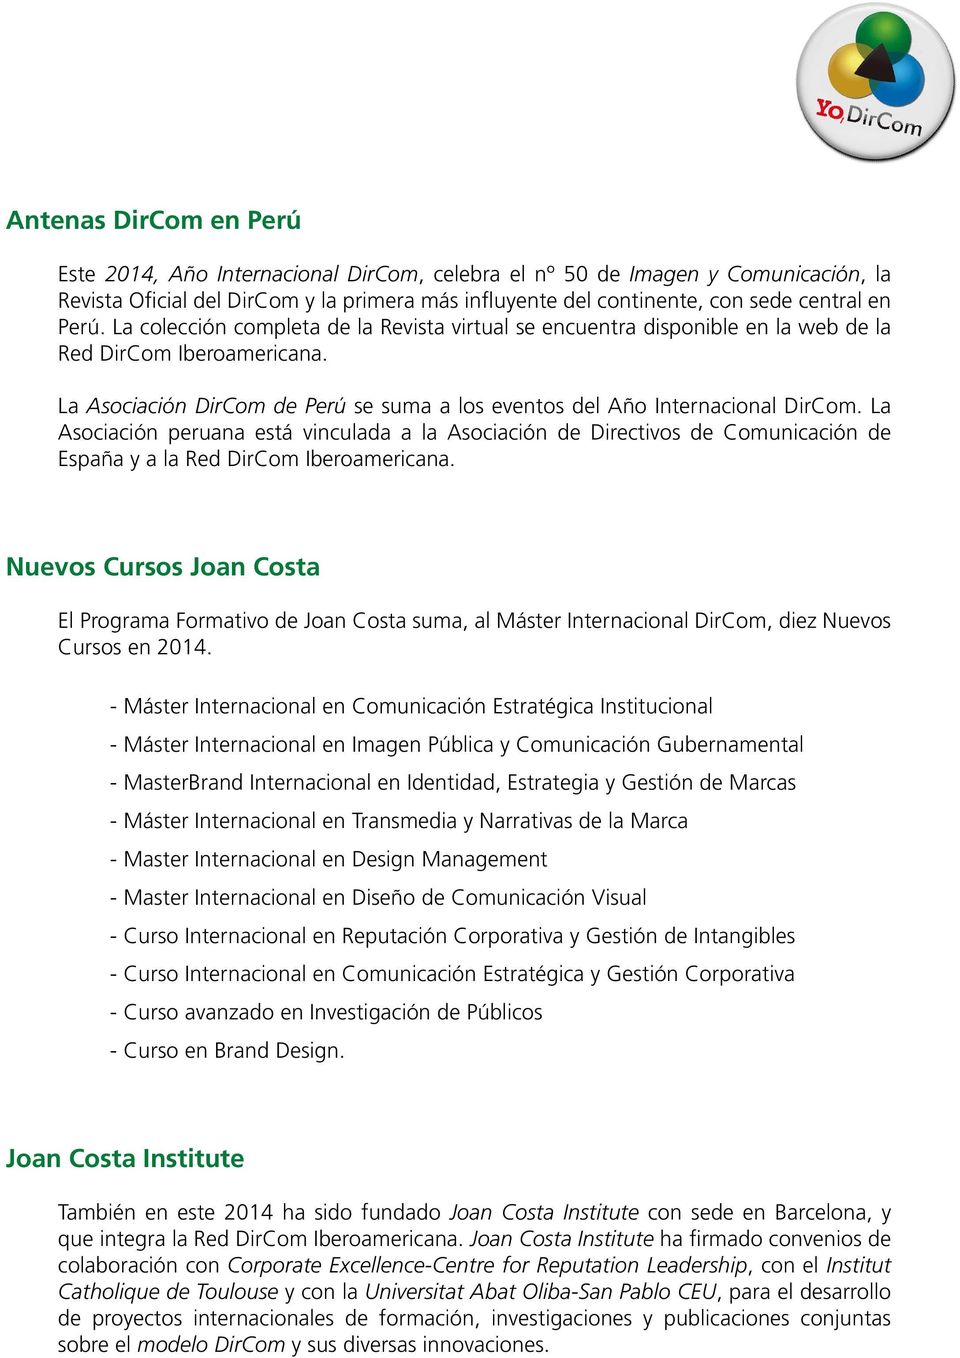 La Asociación peruana está vinculada a la Asociación de Directivos de Comunicación de España y a la Red DirCom Iberoamericana.